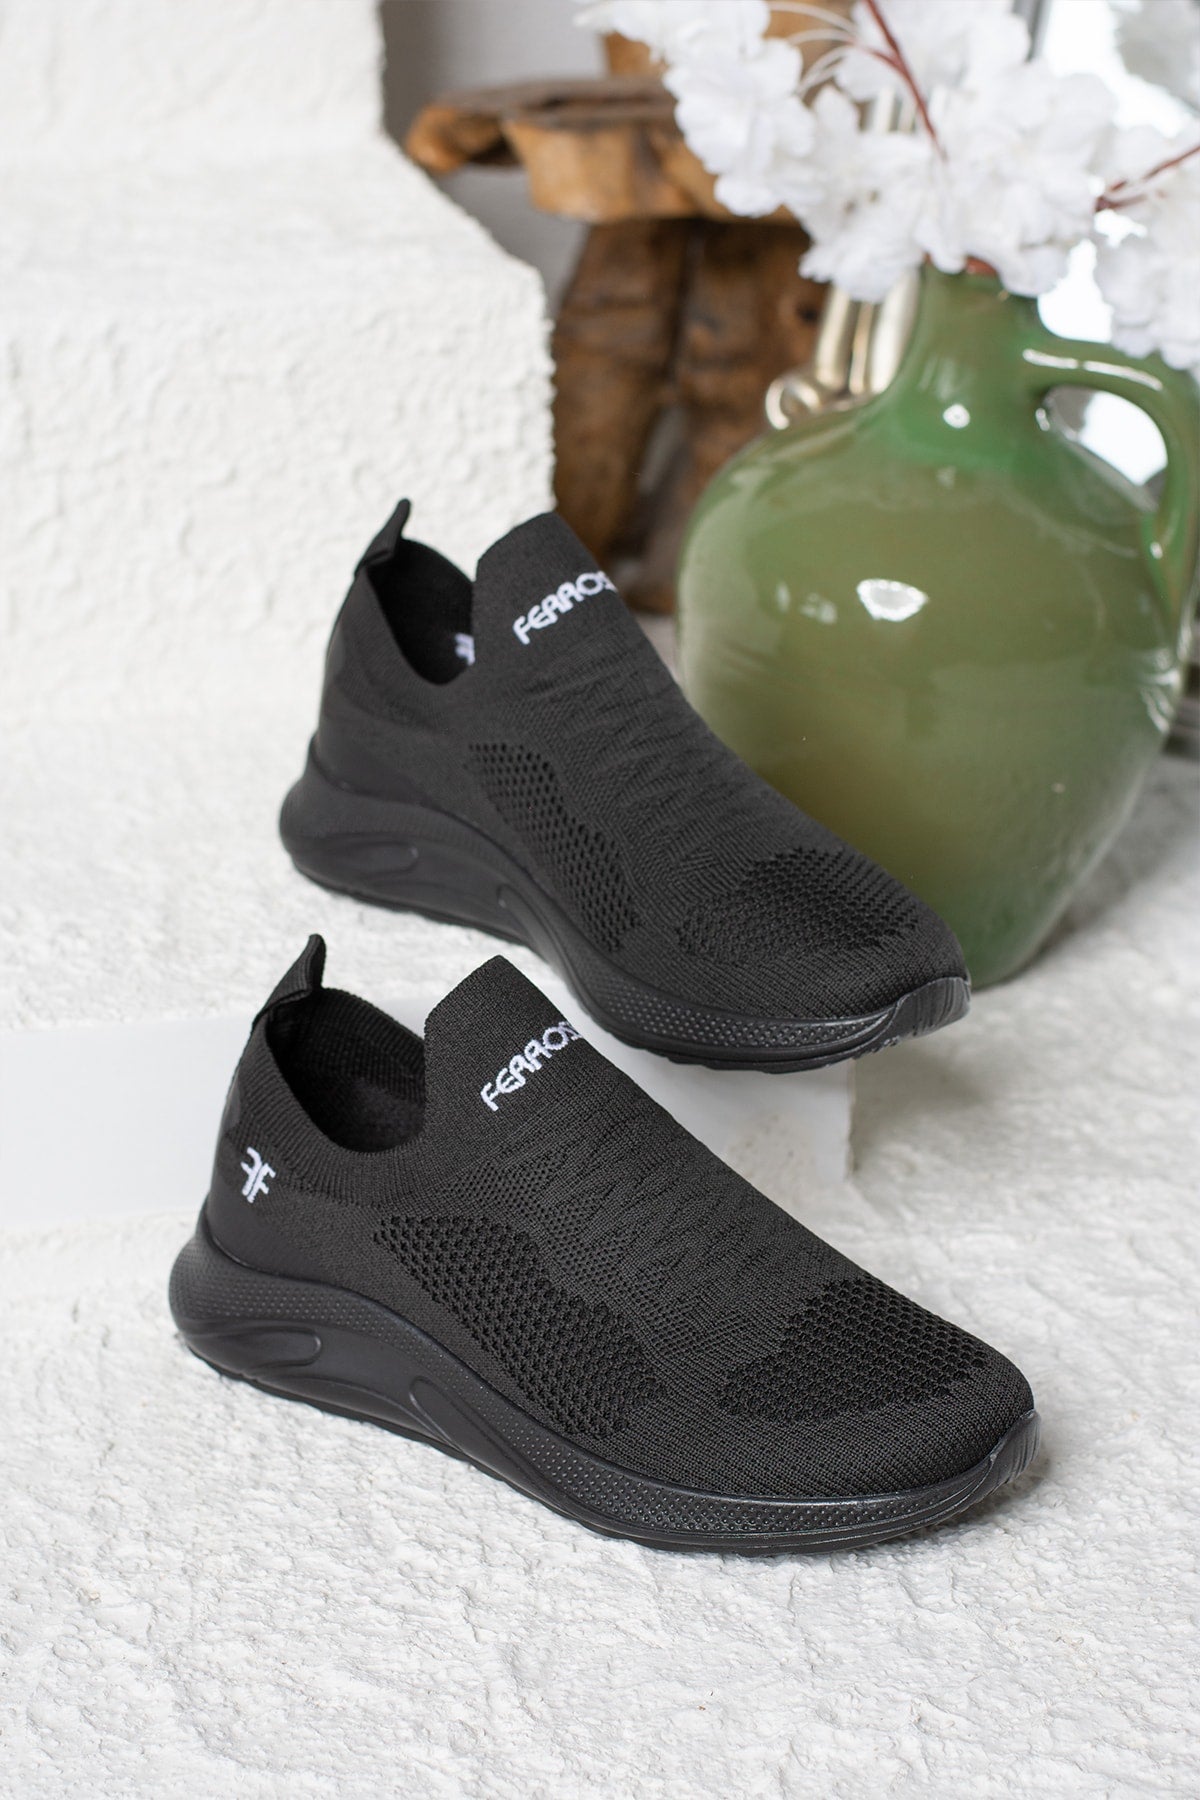 Daily Unisex Black Sneaker Slip-On Breathing Light Walking Lace Flexible Sport Shoes 041F